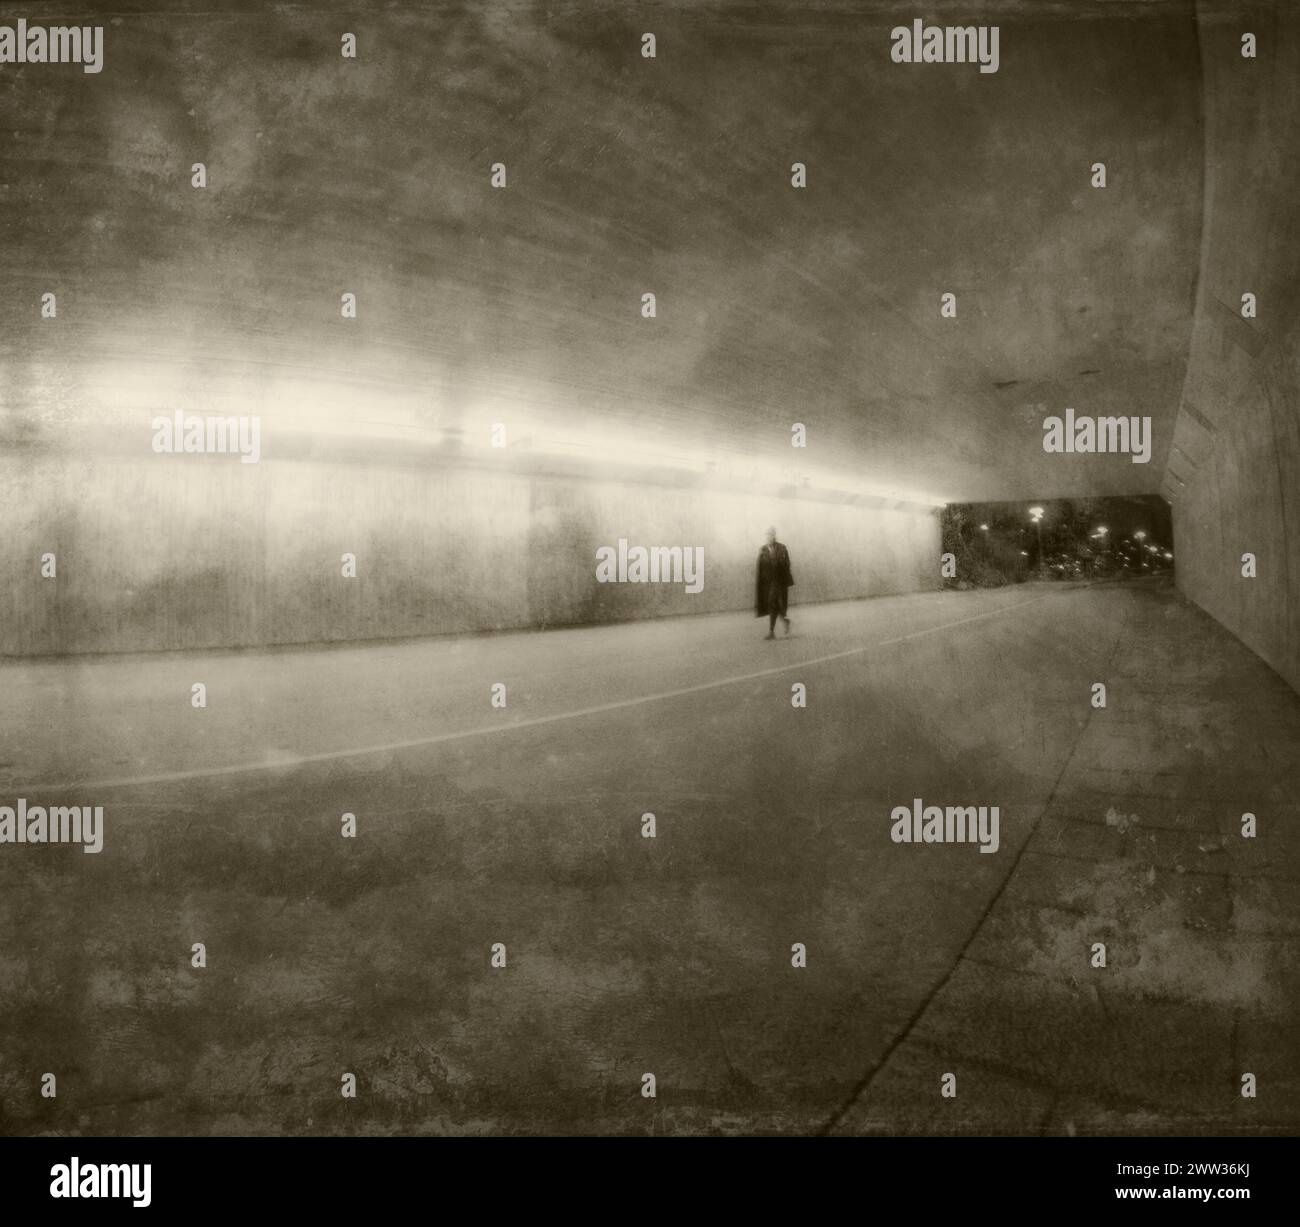 Kreatives Grungy-Bild einer jungen Frau in verschwommener Bewegung, die nachts in einem Tunnel läuft. Stockfoto